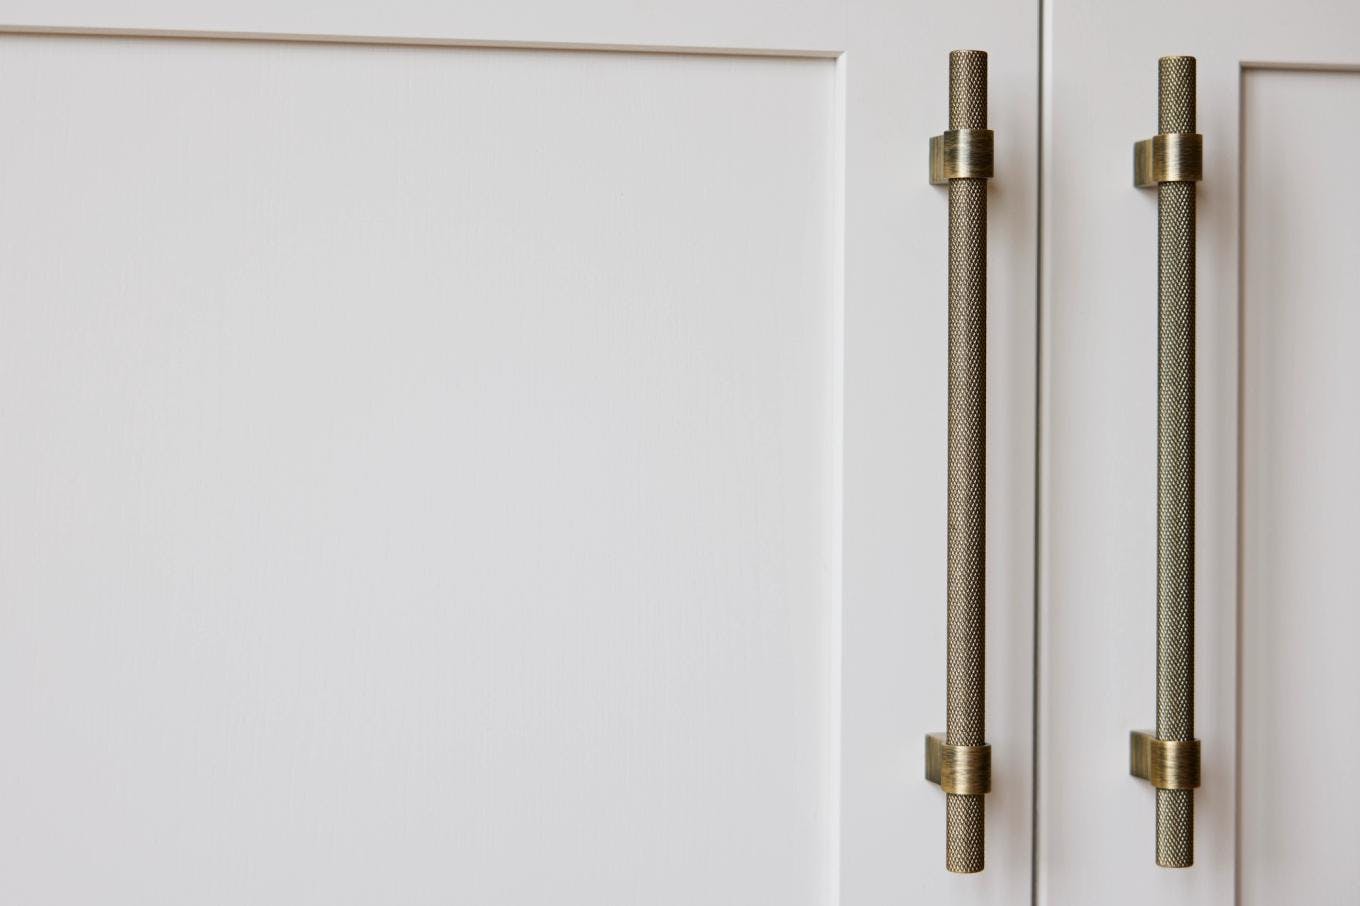 Brass knurled kitchen cupboard handles